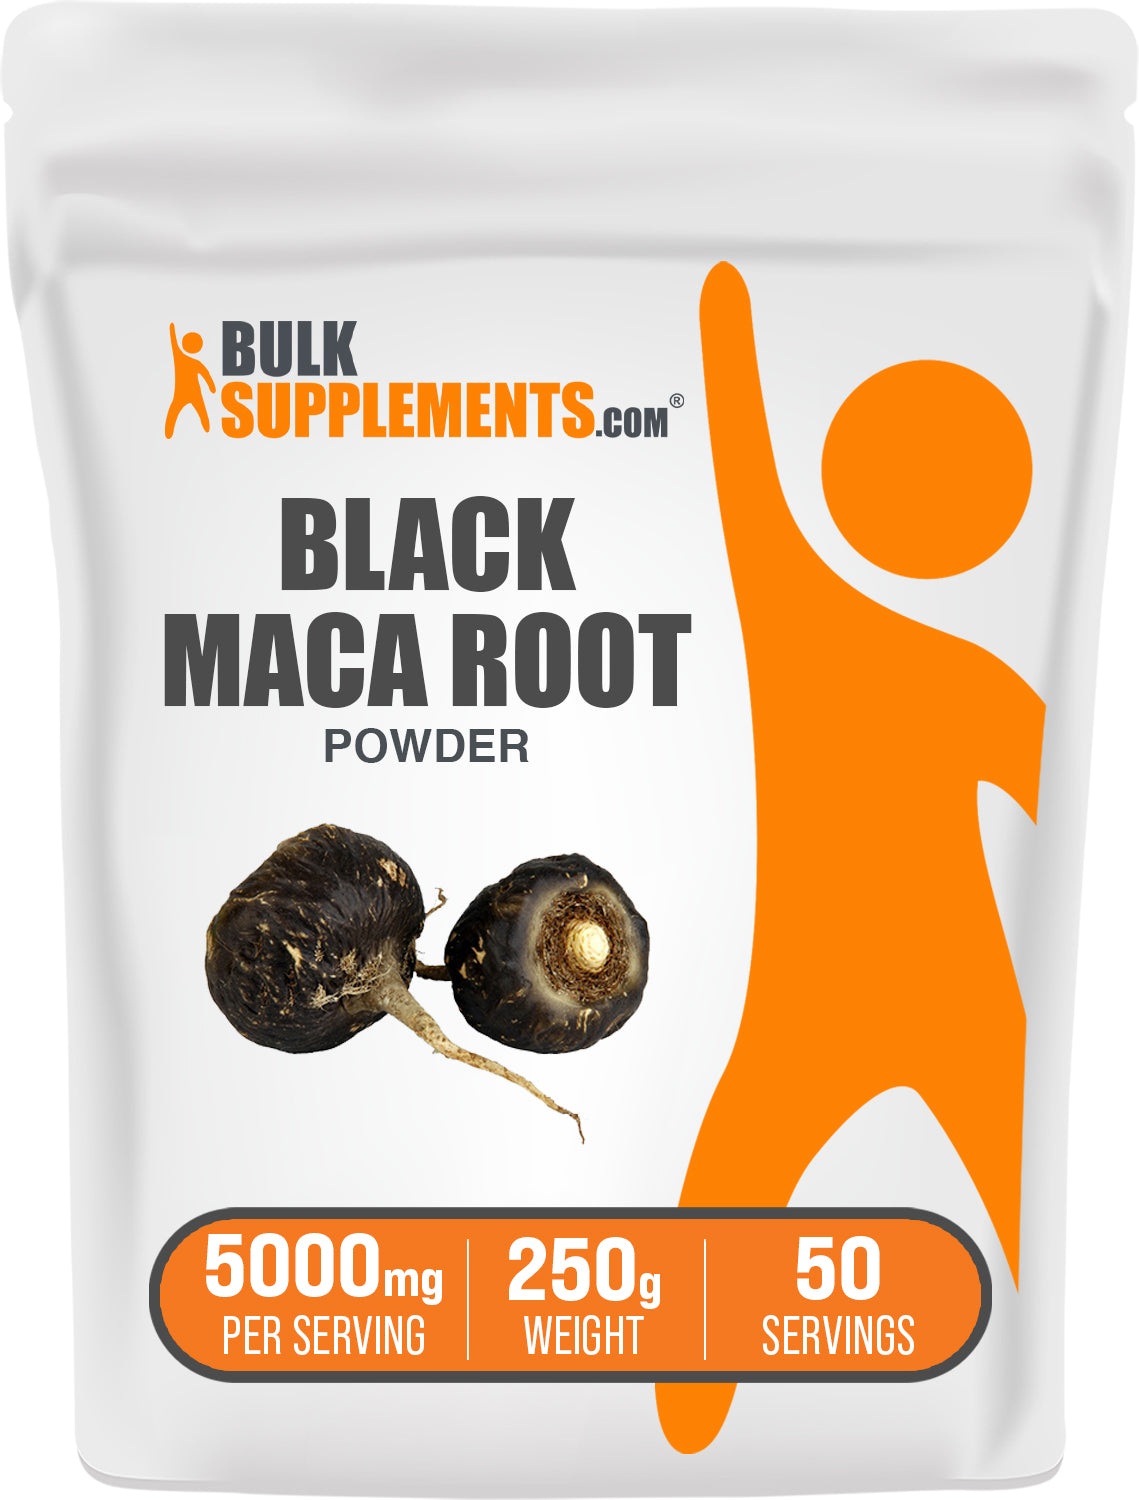 BulkSupplements.com Black Maca Powder 250g bag